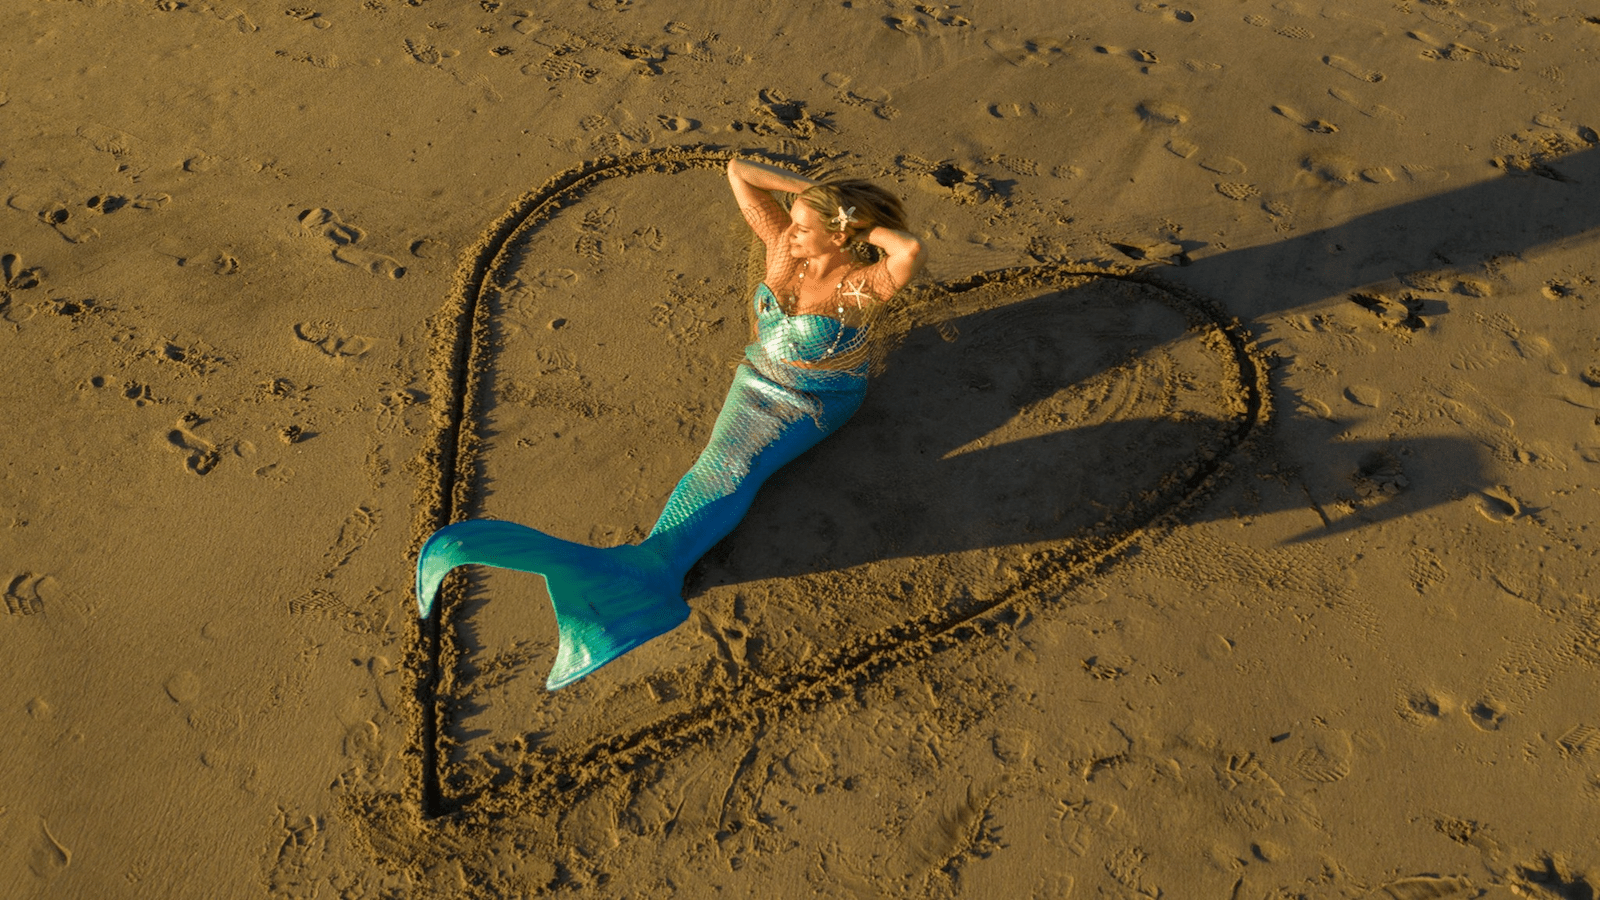 Mermaid Memories Santa Cruz-South Bay-Educational and creative-credit @MermaidMemoriesSC-1600x900